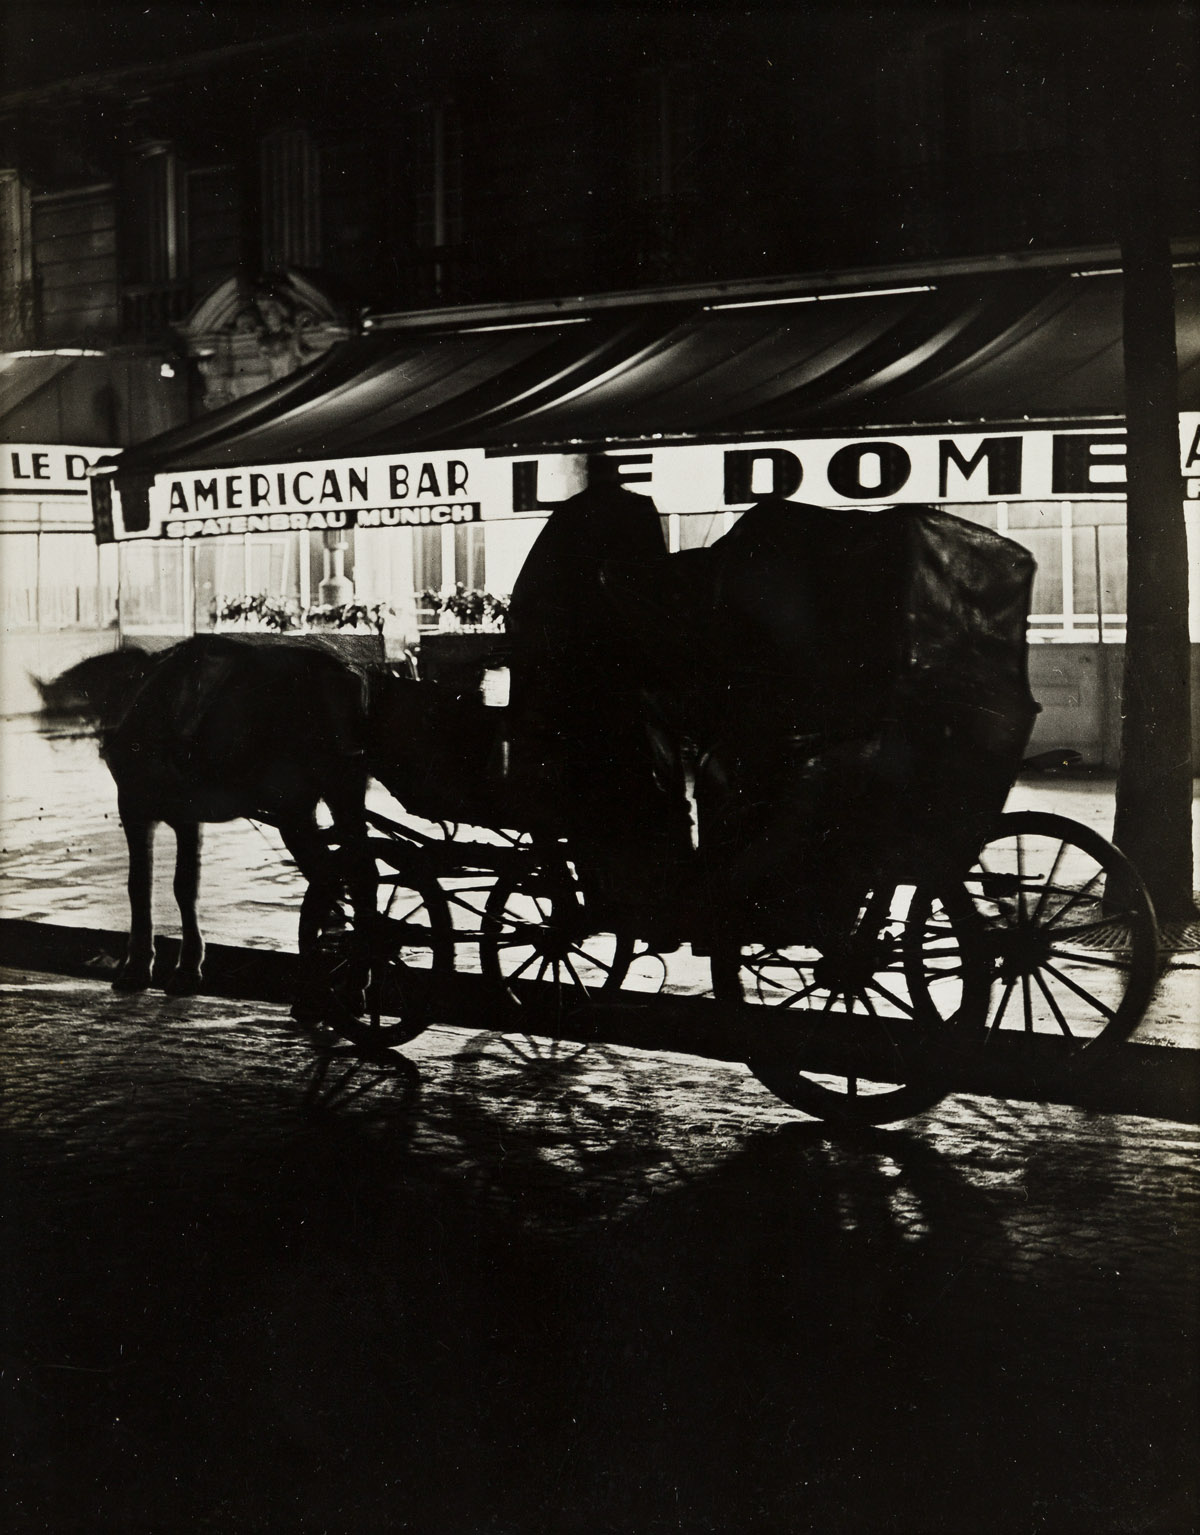 BRASSAÏ (1899-1984) Un Fiacre devant le Café Le Dome, Montparnasse.